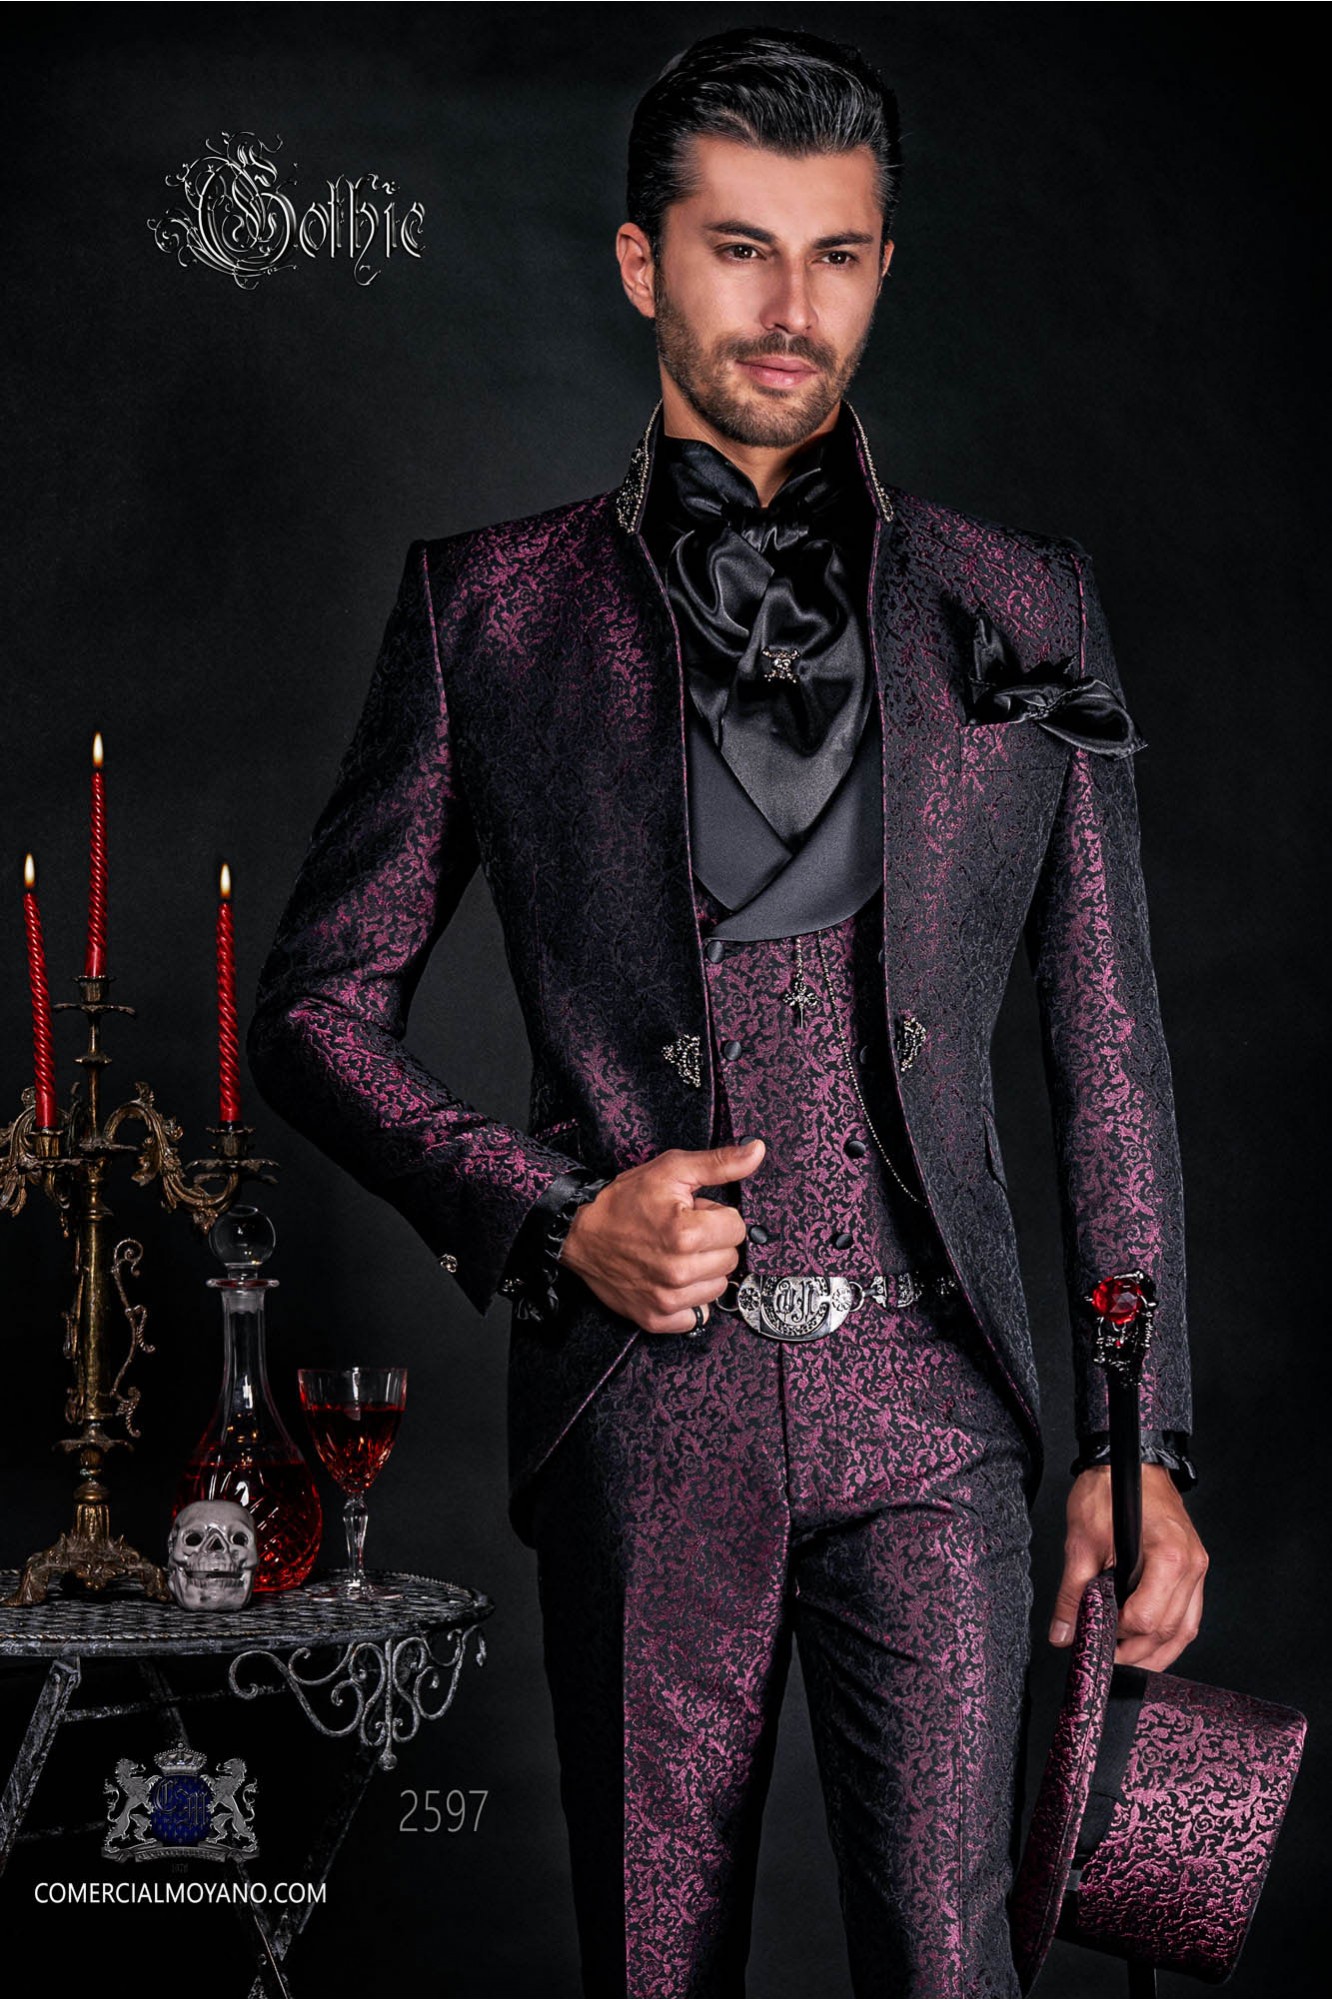 Vintage Men wedding frock coat in purple-black brocade fabric with Mao collar with black rhinestones model 2597 Mario Moyano